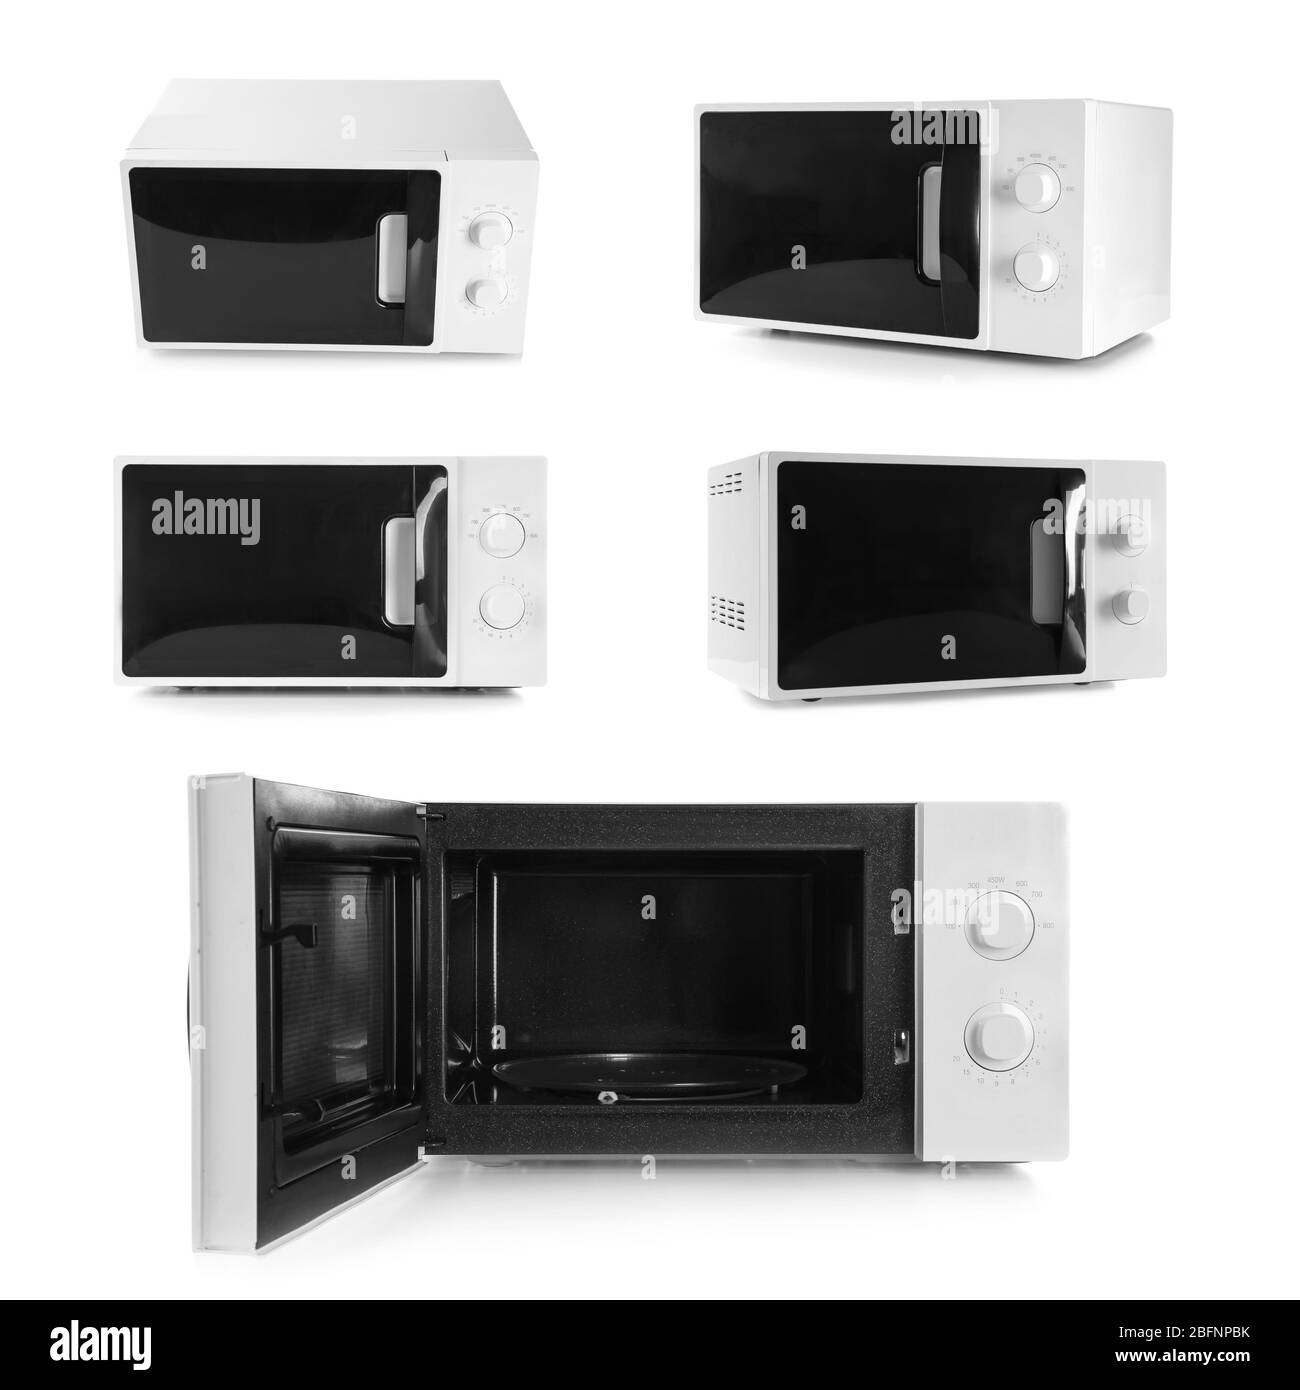 https://c8.alamy.com/comp/2BFNPBK/set-of-microwave-ovens-on-white-background-2BFNPBK.jpg